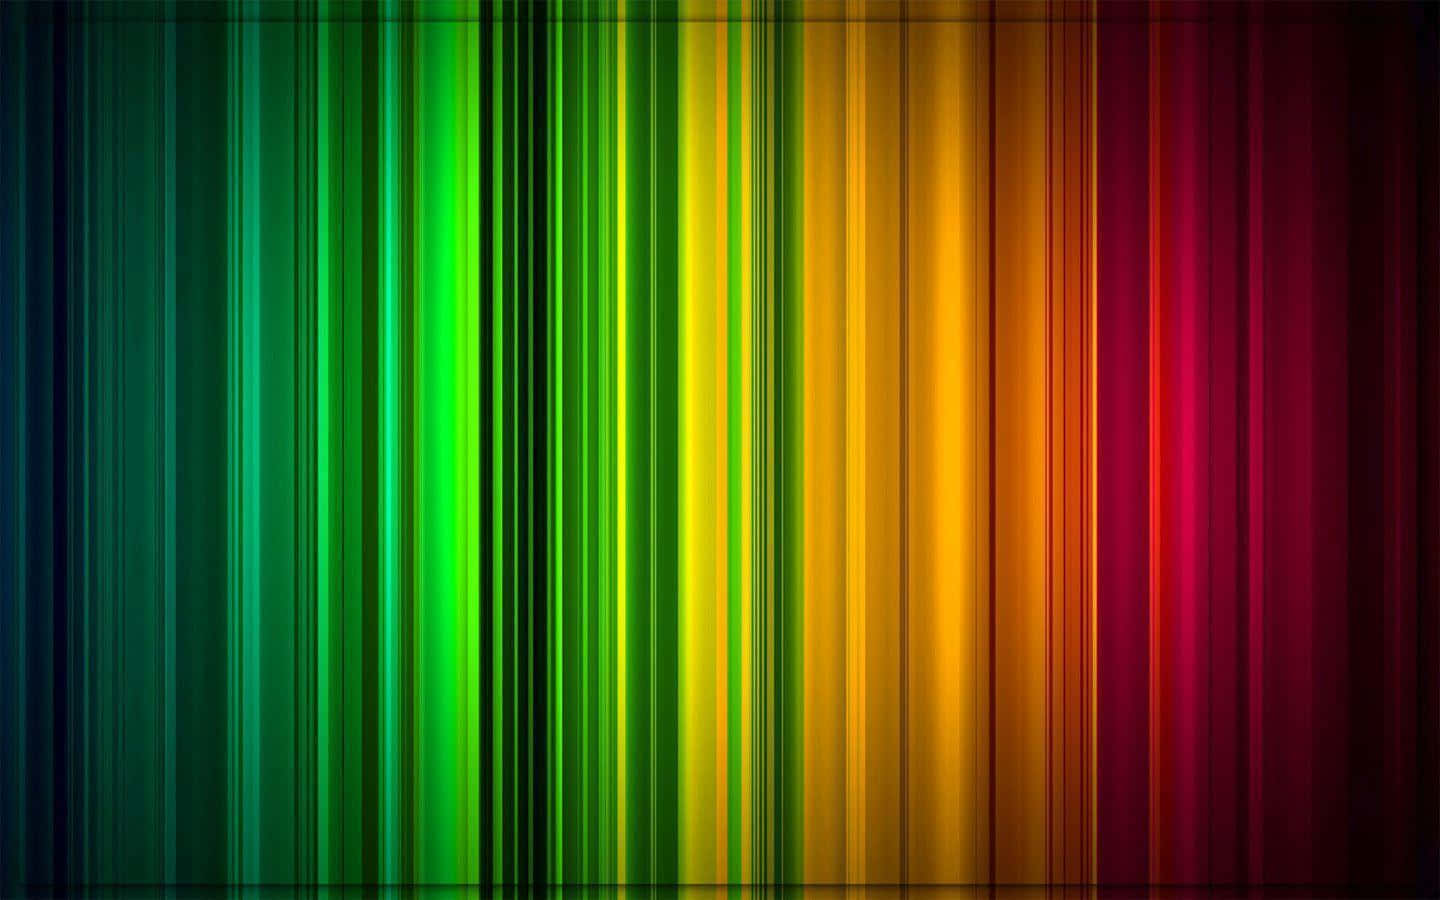 Brightly colored spectrum stripes across a dark sky